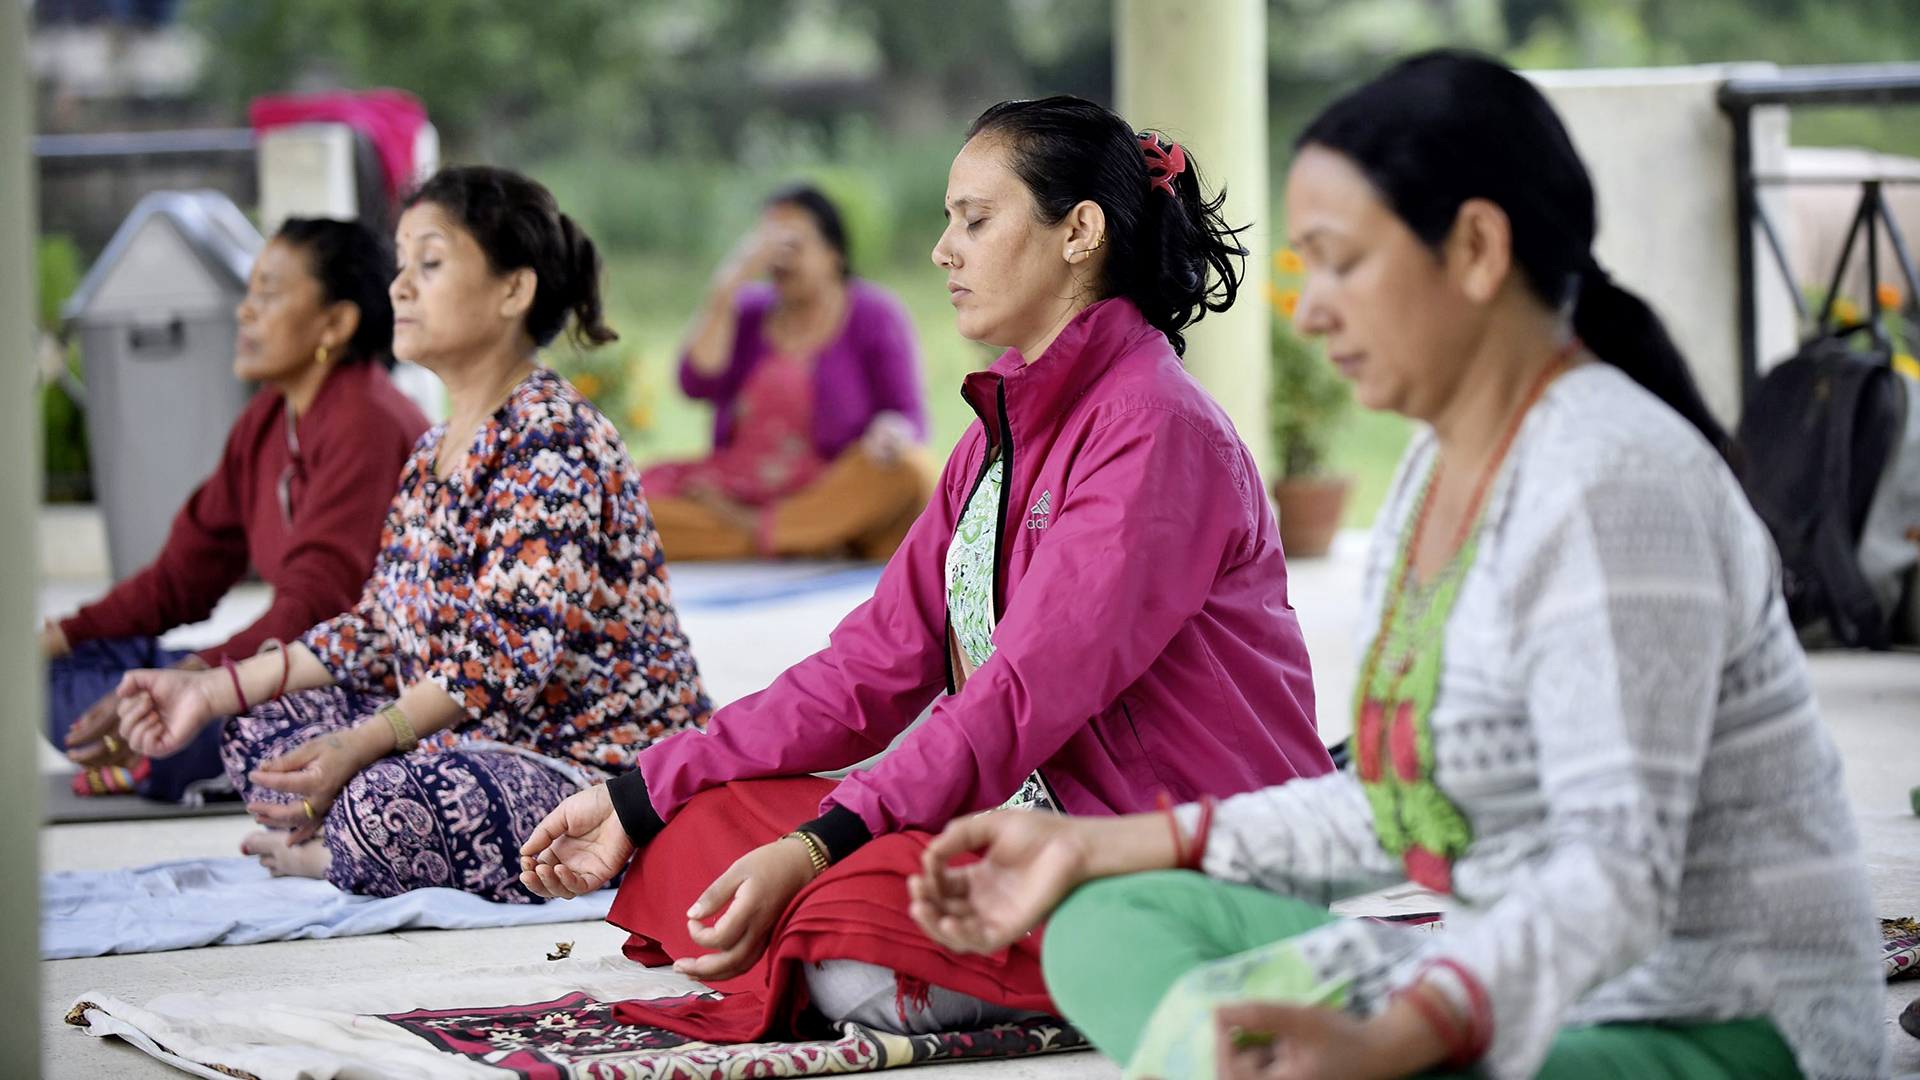 Yoga-Praxis in Nepal: „In der Meditation werde ich mir selbst und meiner Körperlichkeit besonders gewahr.“